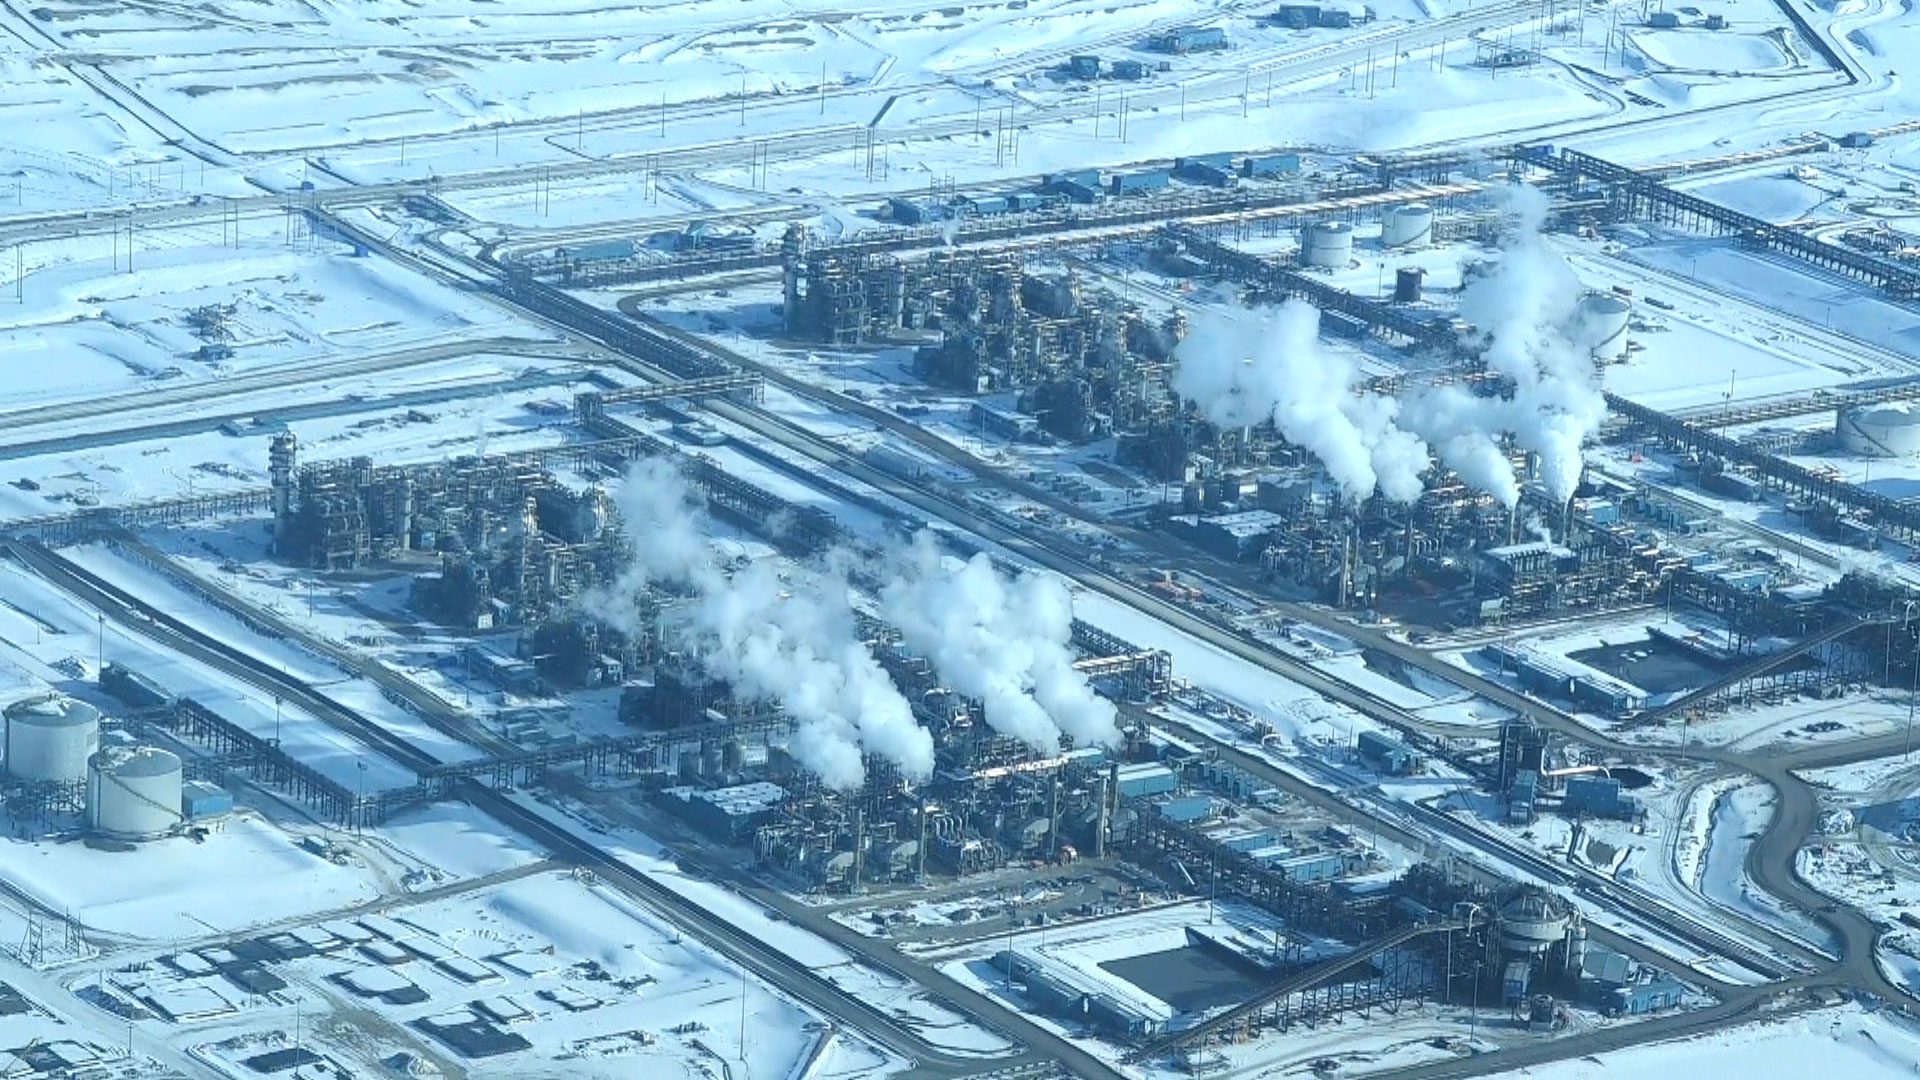 Alberta regulator won’t says when it knew of Kearl tar sands spill